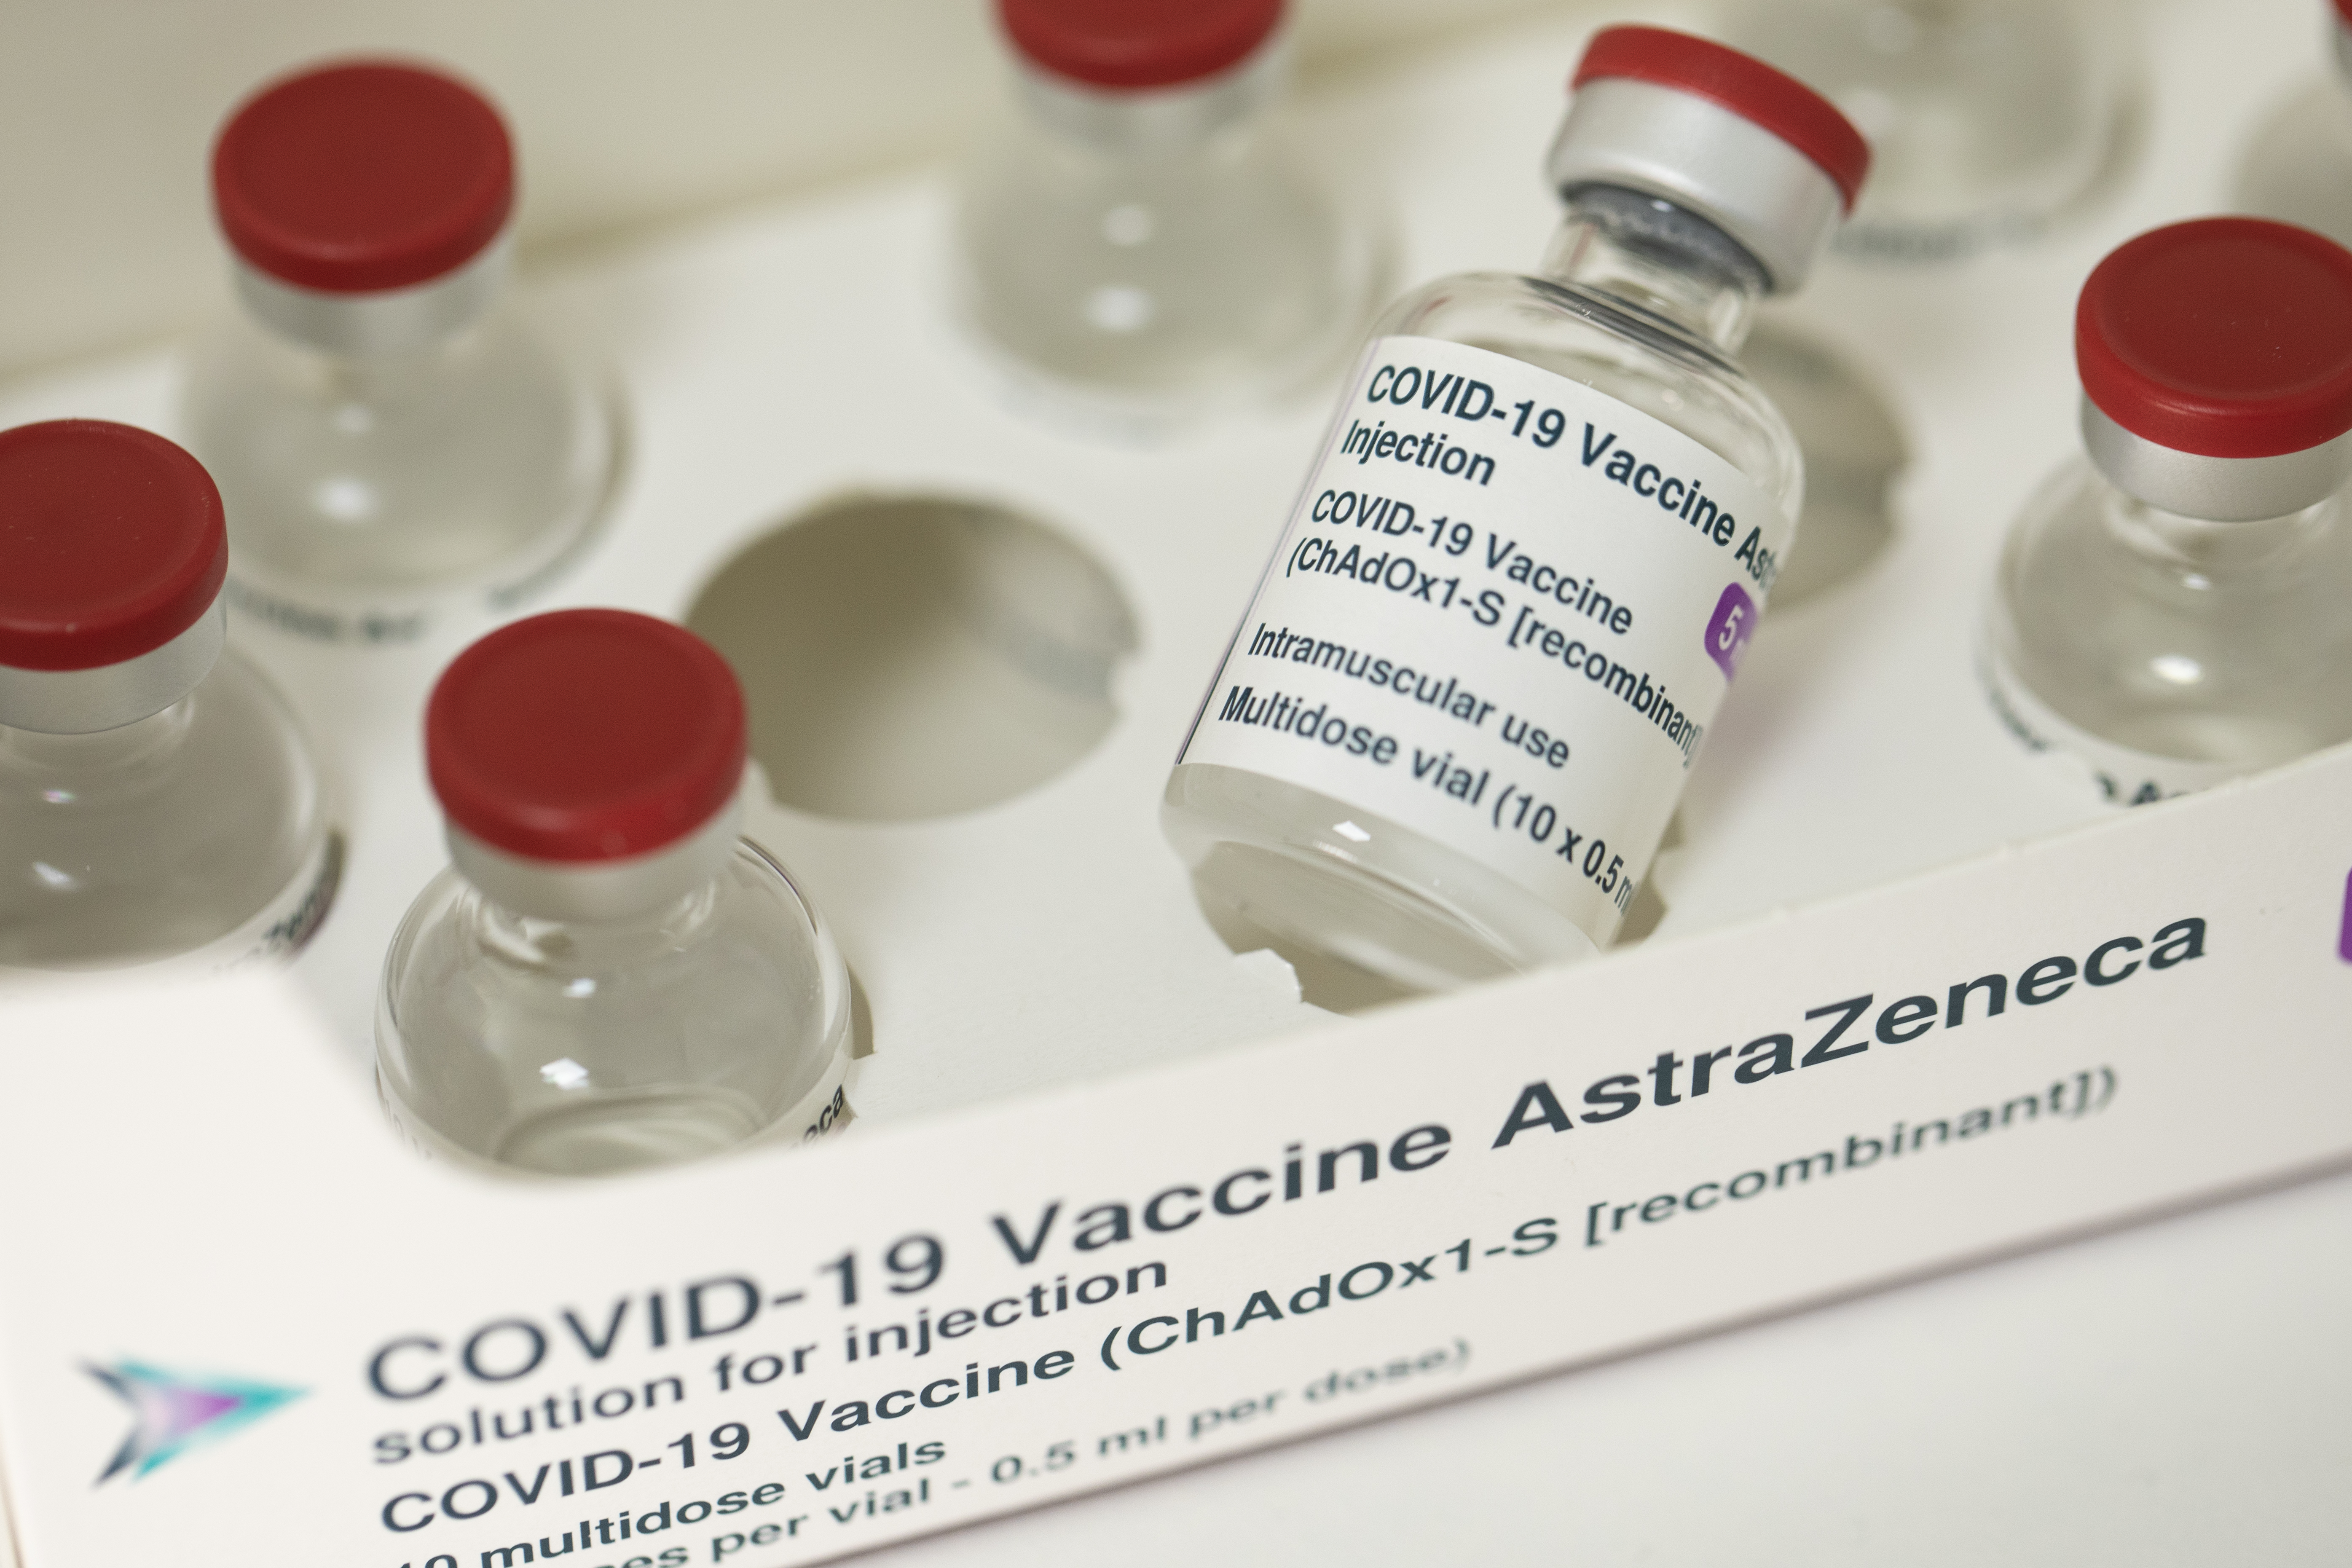 Vaccines astrazeneca